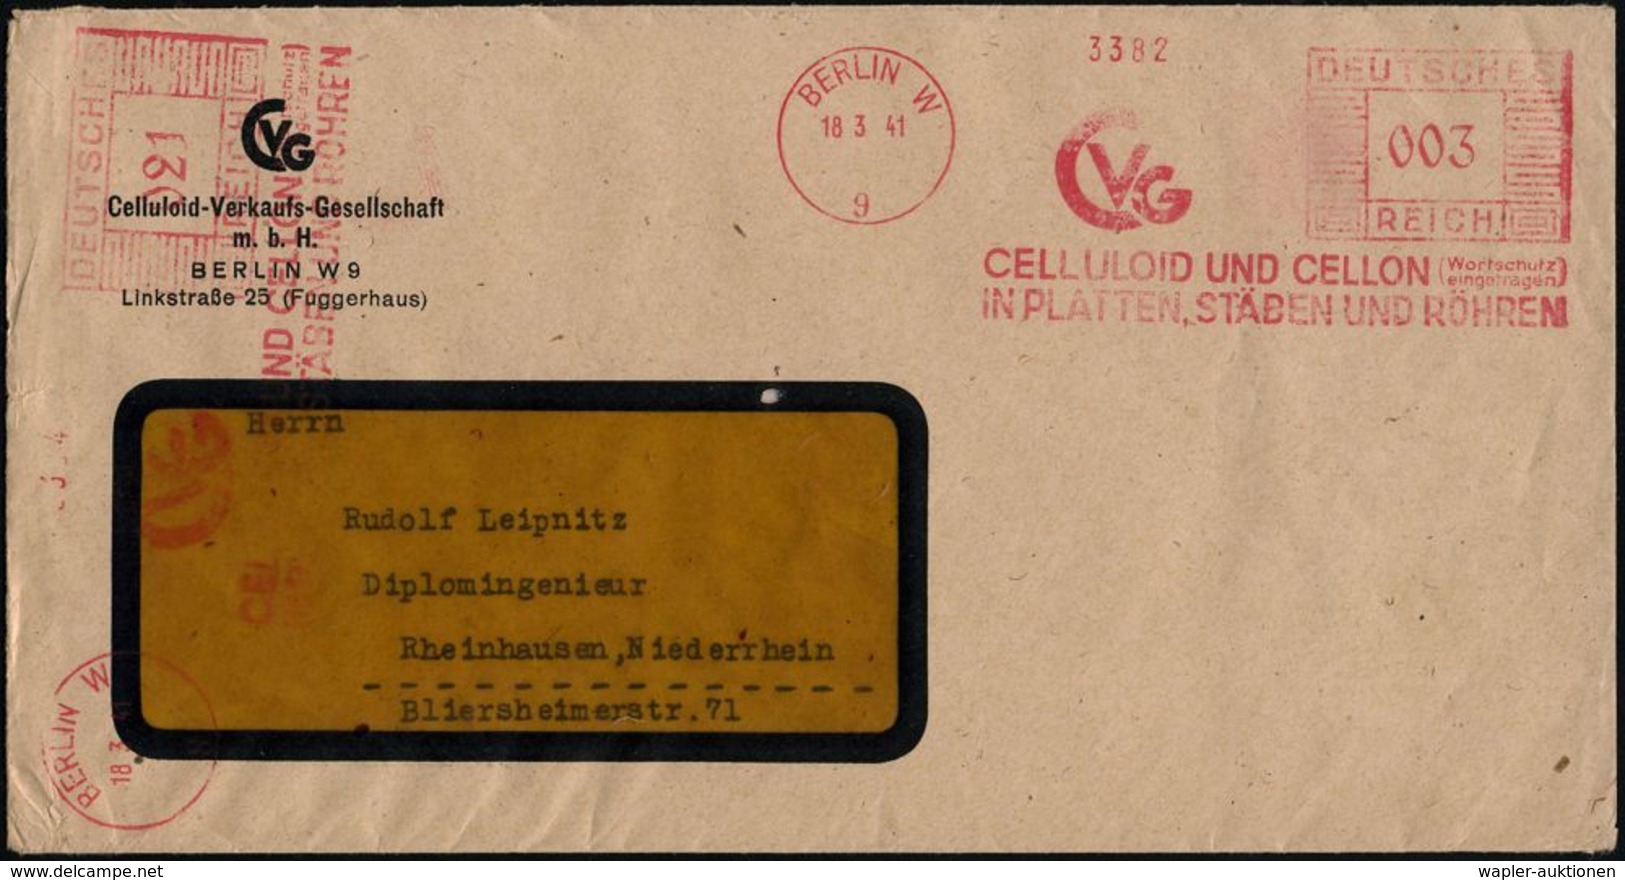 BERLIN W/ 9/ CVG/ CELLULOID UND CELLON (Wortschutz/ Eingetragen)... 1941 (18.3.) AFS 003 Pf. + 021 Pf. = 2 Abdrucke = 24 - Química